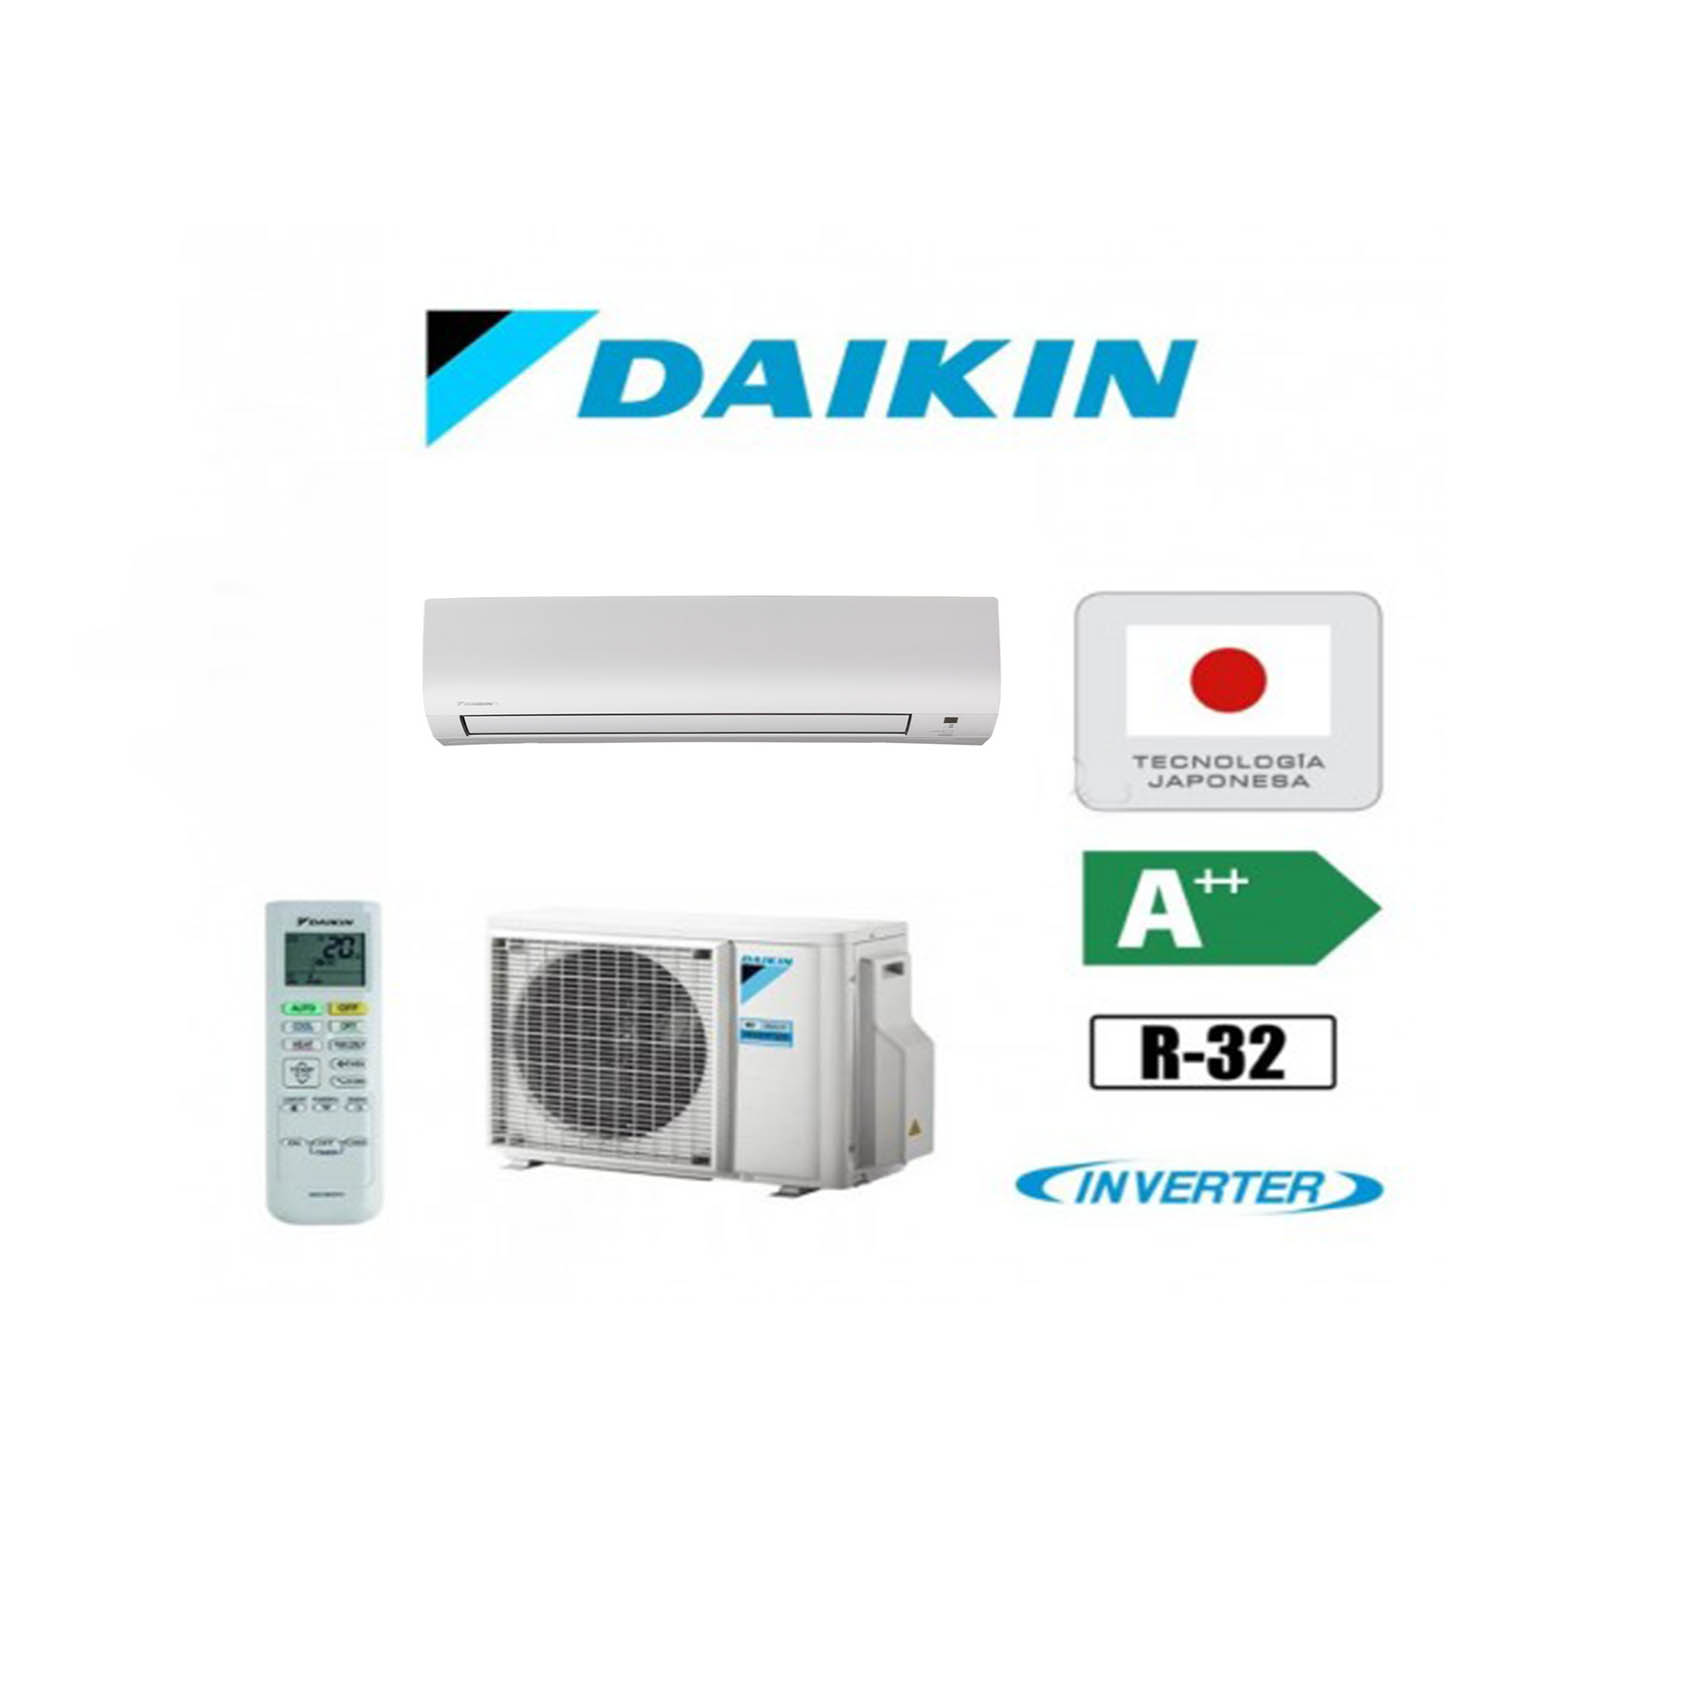 Aire acondicionado Split de la marca Daikin y modelo TXP20M con tecnologia Inverter y gas R22 con A++ eficiencia energetica